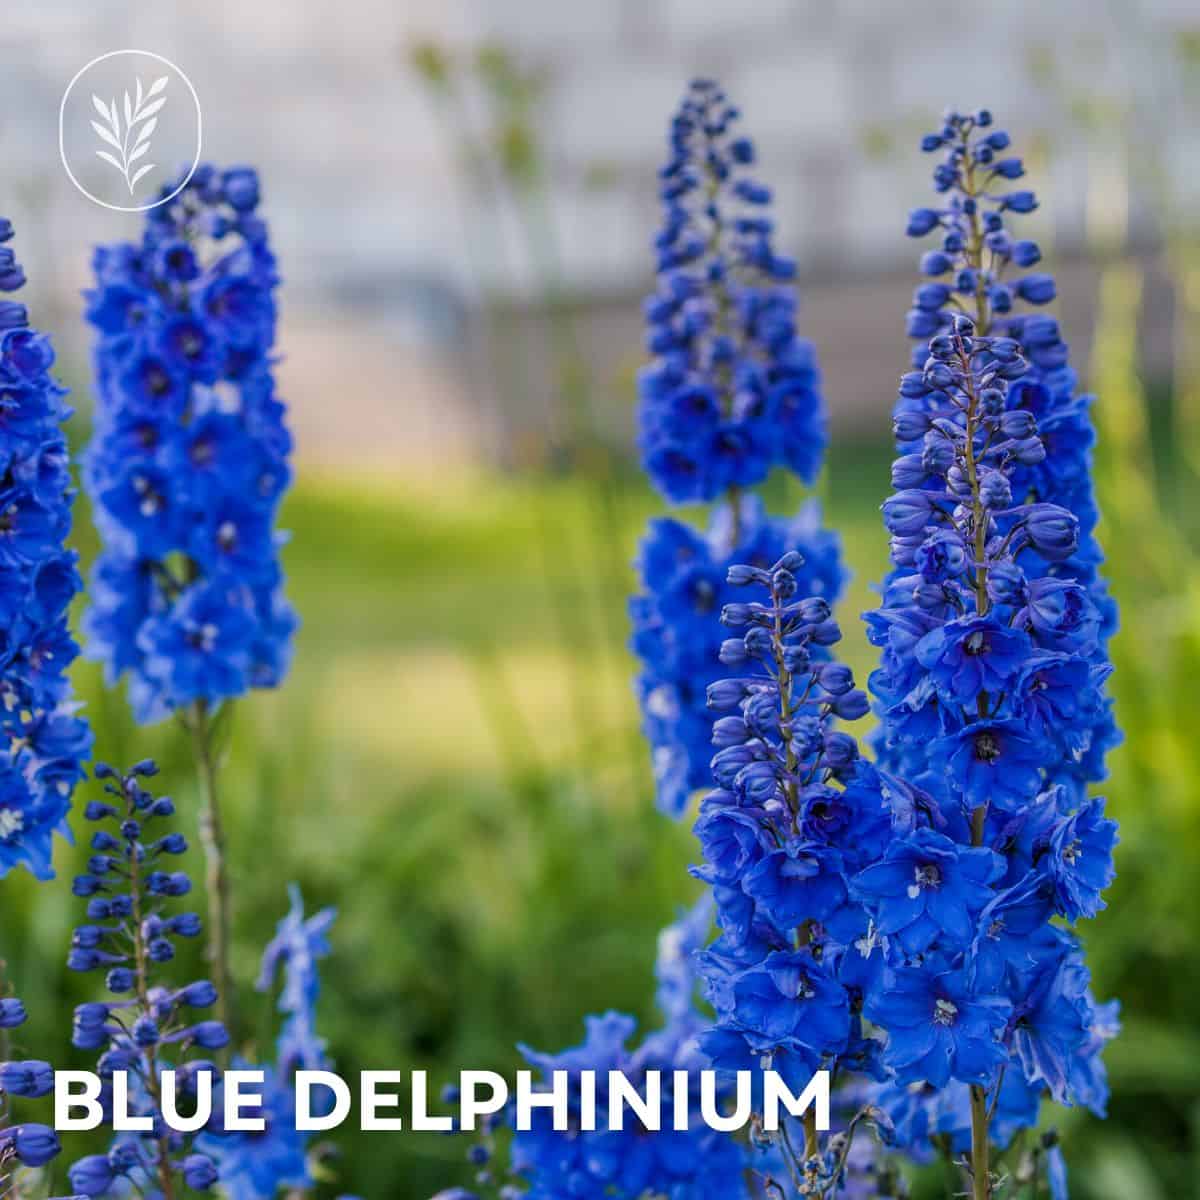 Blue delphinium via @home4theharvest